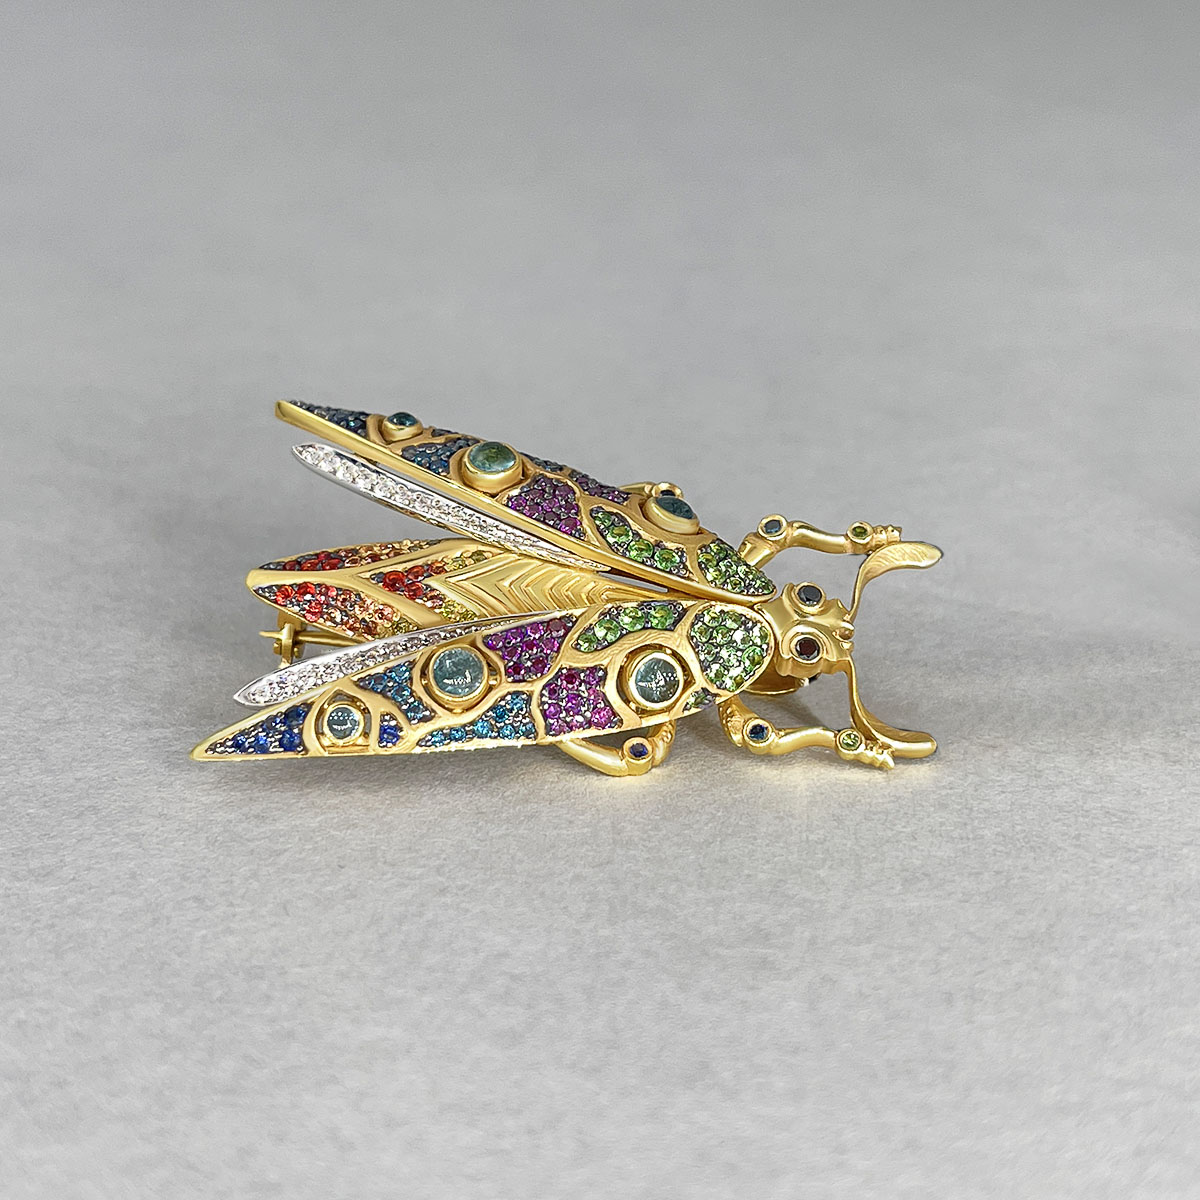 Брошь в виде насекомого с бриллиантами, цветными камнями в желтом золоте 750 пробы, фото № 2